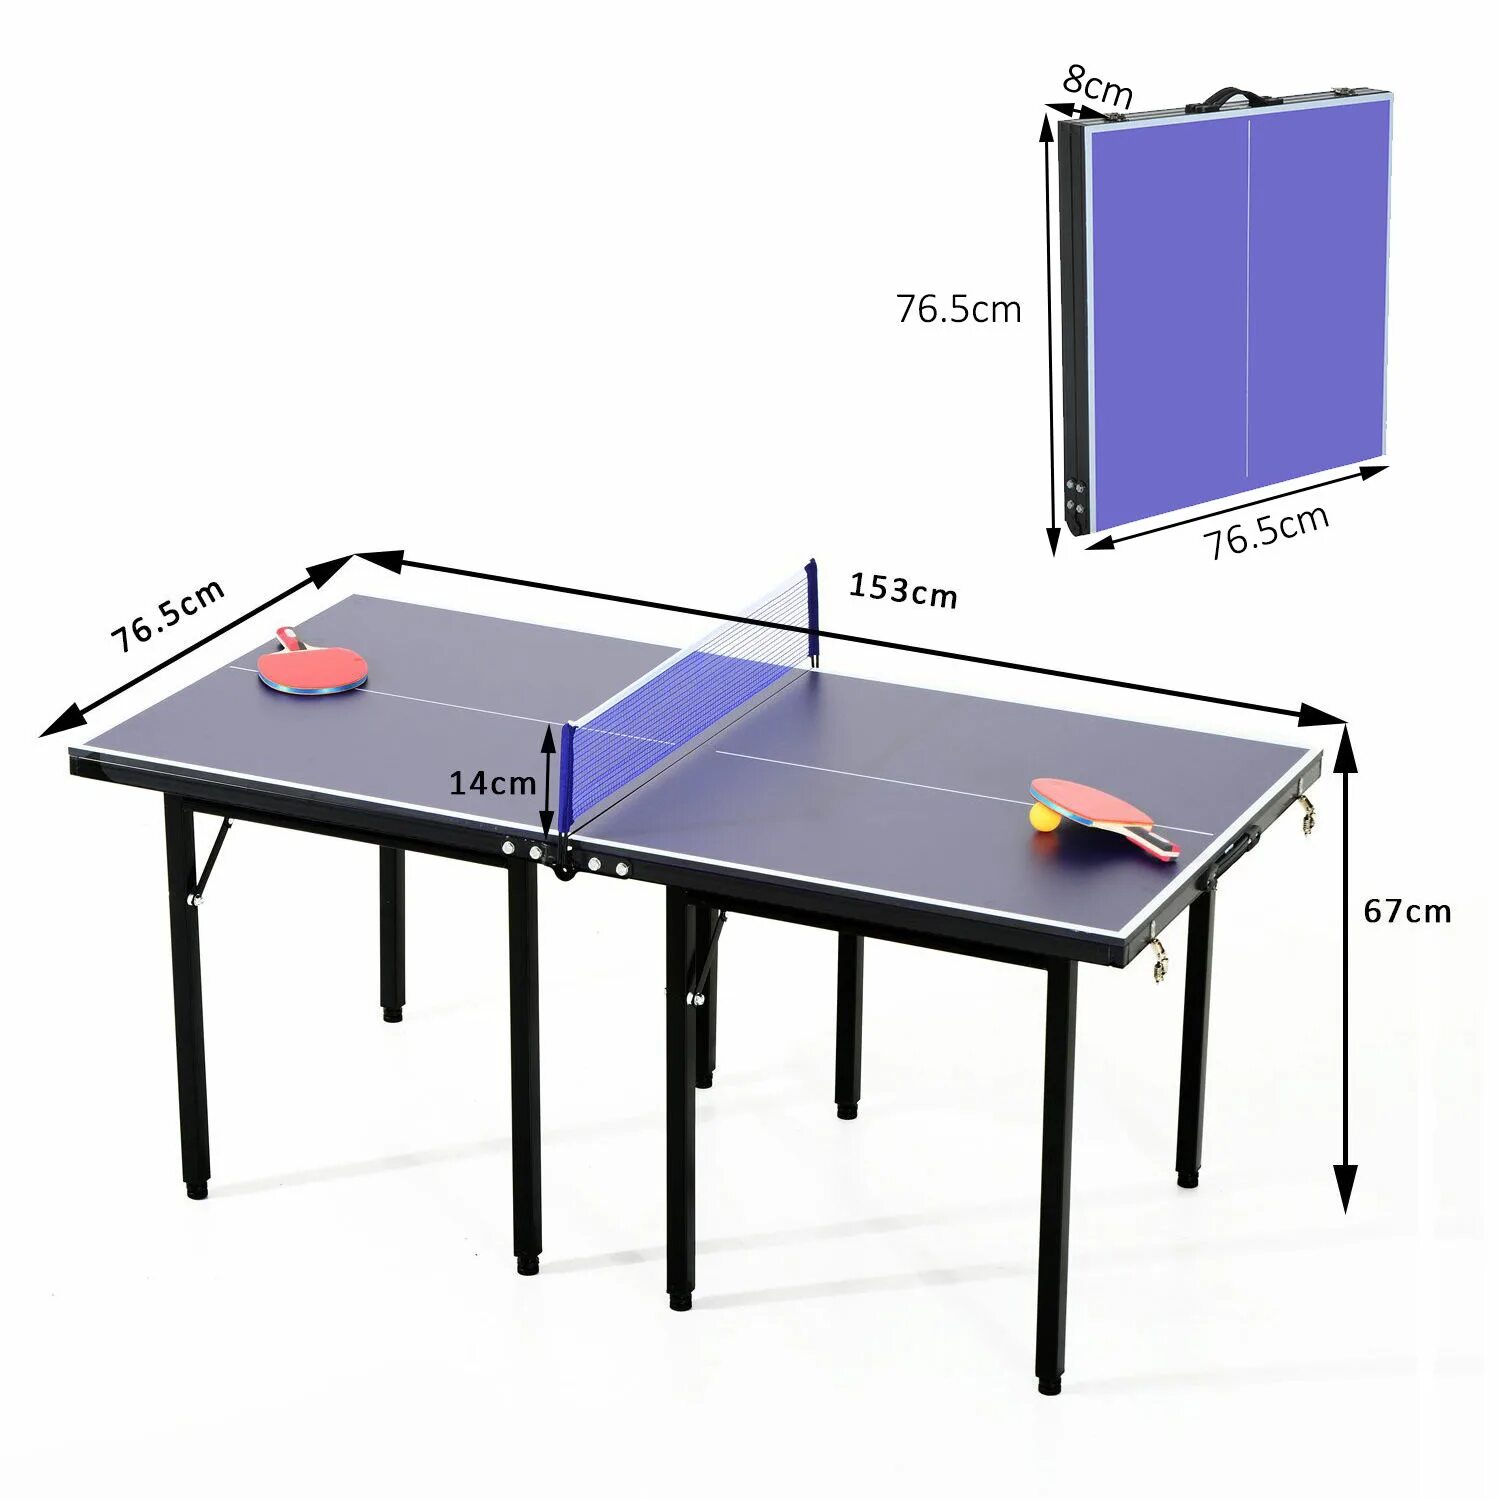 Мини стол для пинг понга. Теннисный стол Юниор. Стол для настольного тенниса Юниор. Стол для ПИНКПОНГА 1,5/1,5.